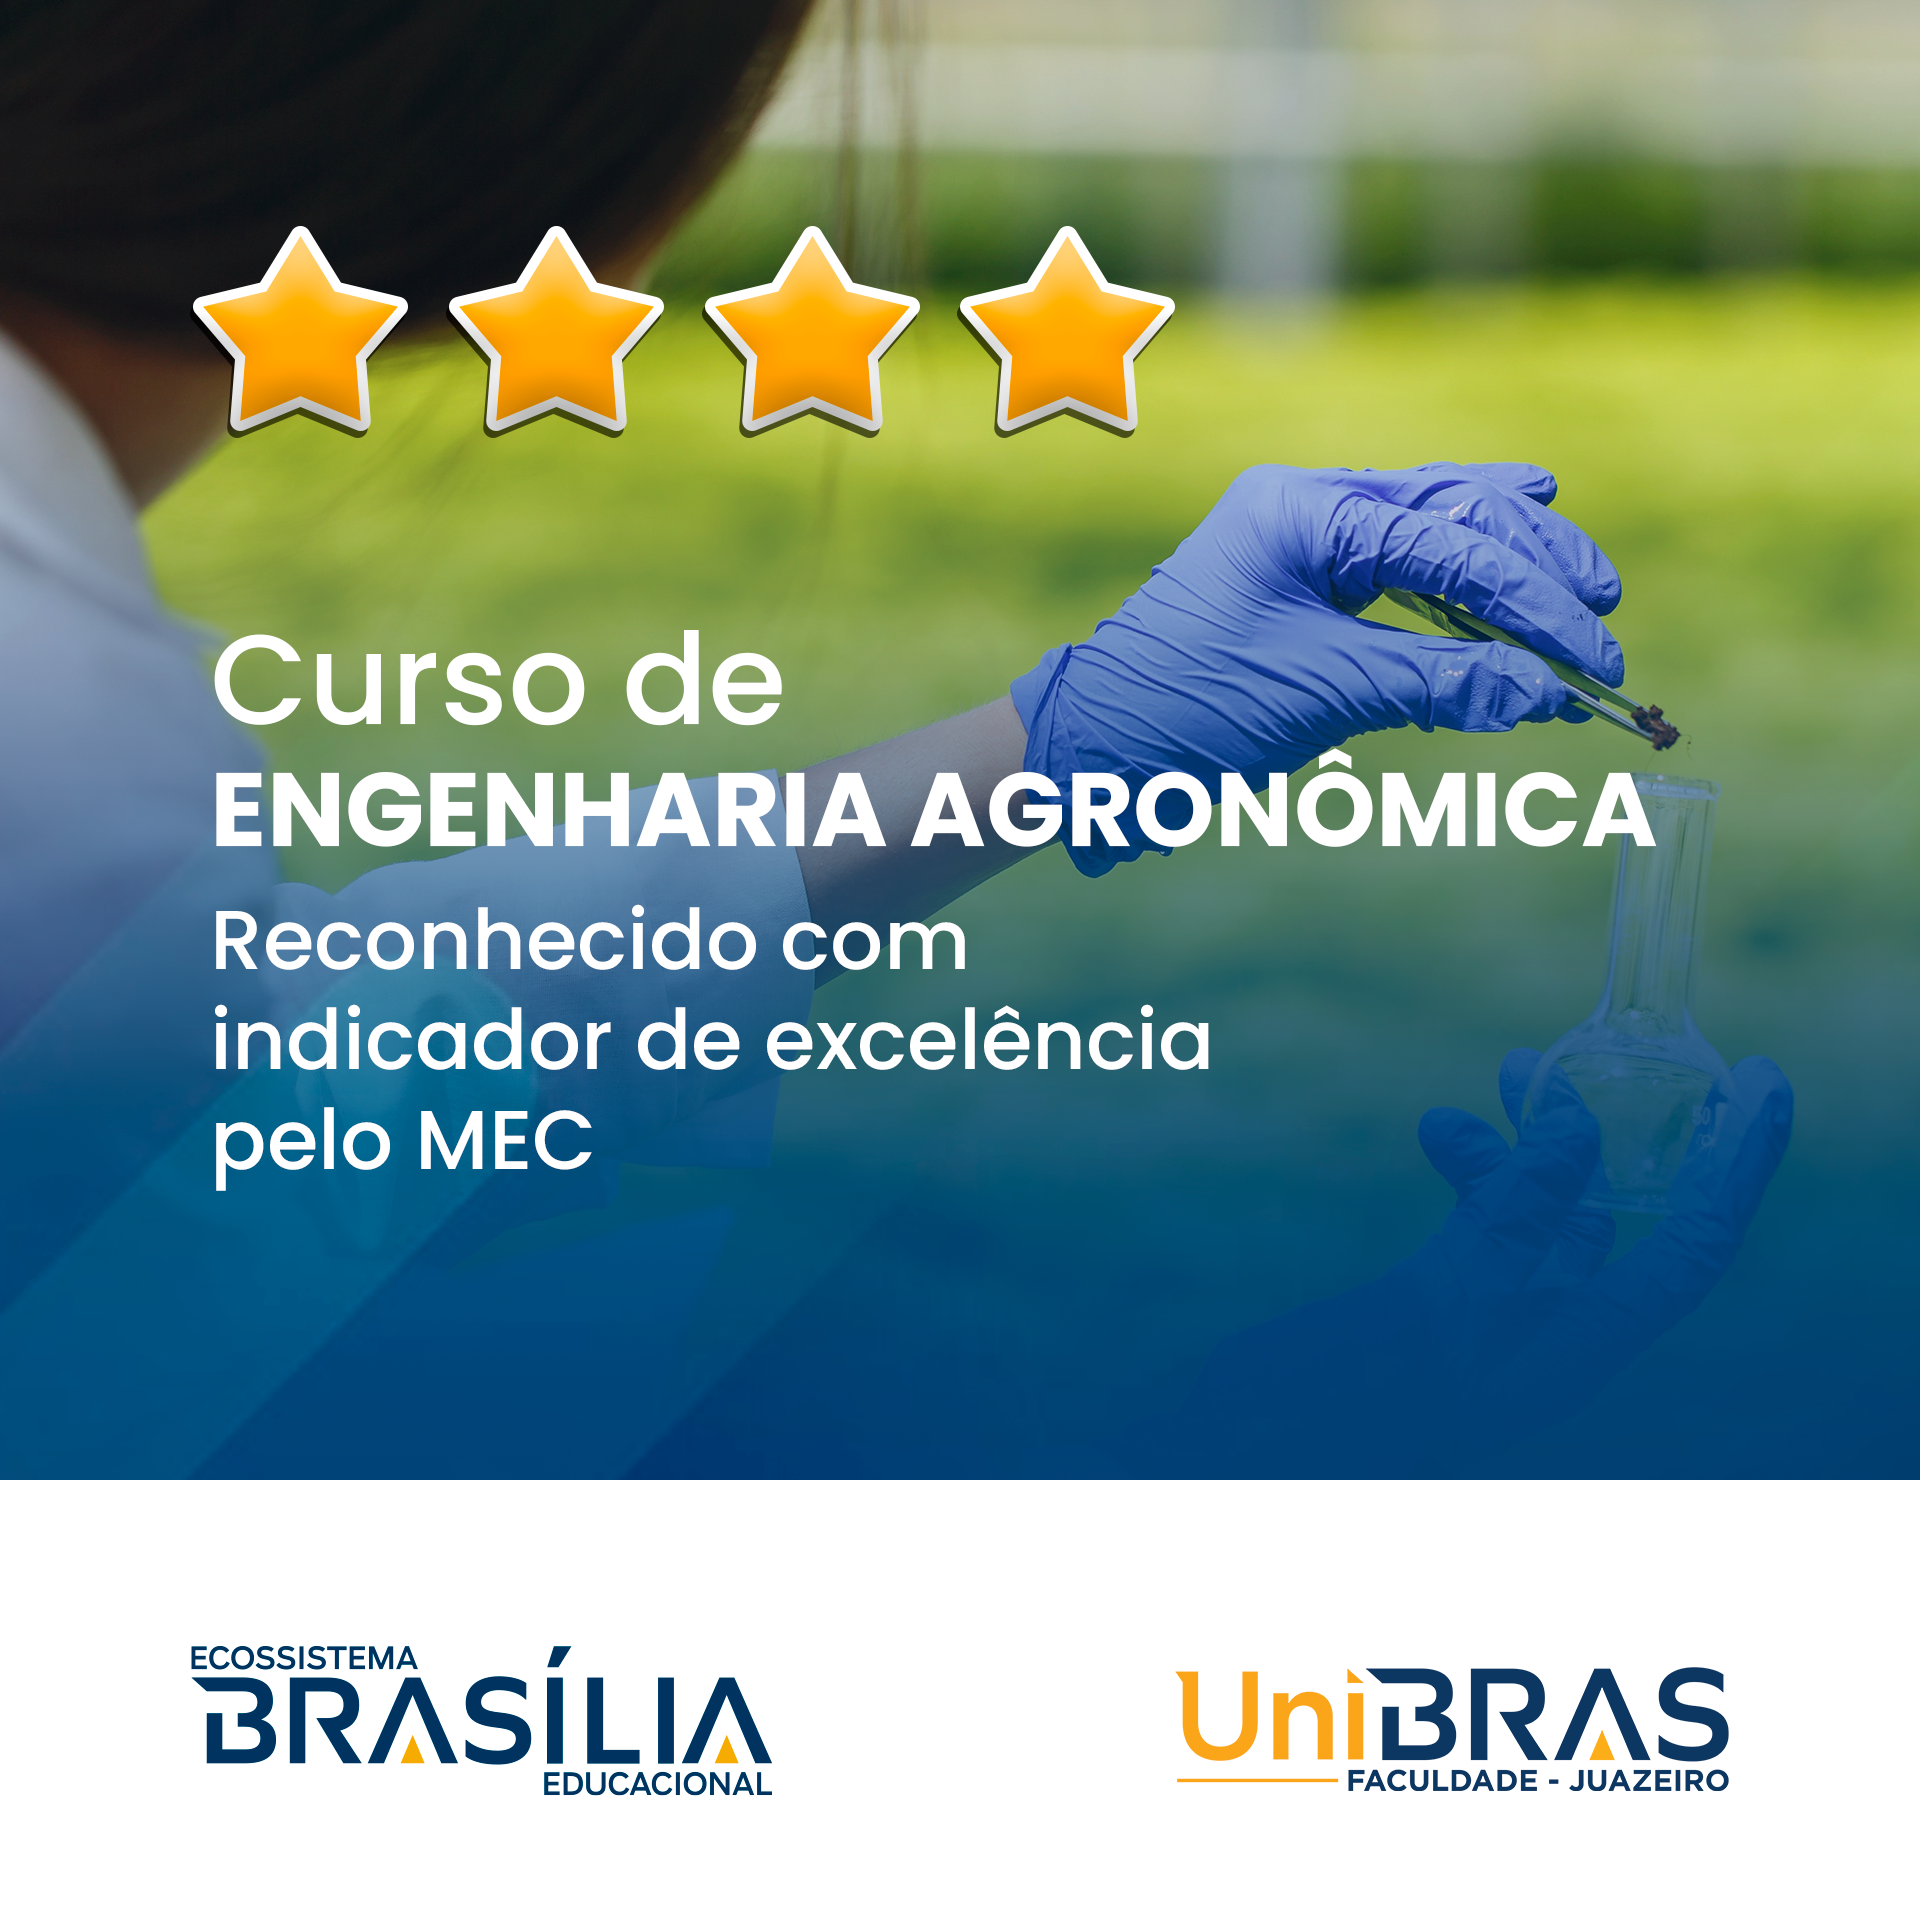 Curso-de-Engenharia-Agronomica-da-Faculdade-UniBRAS-Juazeiro-e-reconhecido-com-indicador-de-excelencia-pelo-MEC